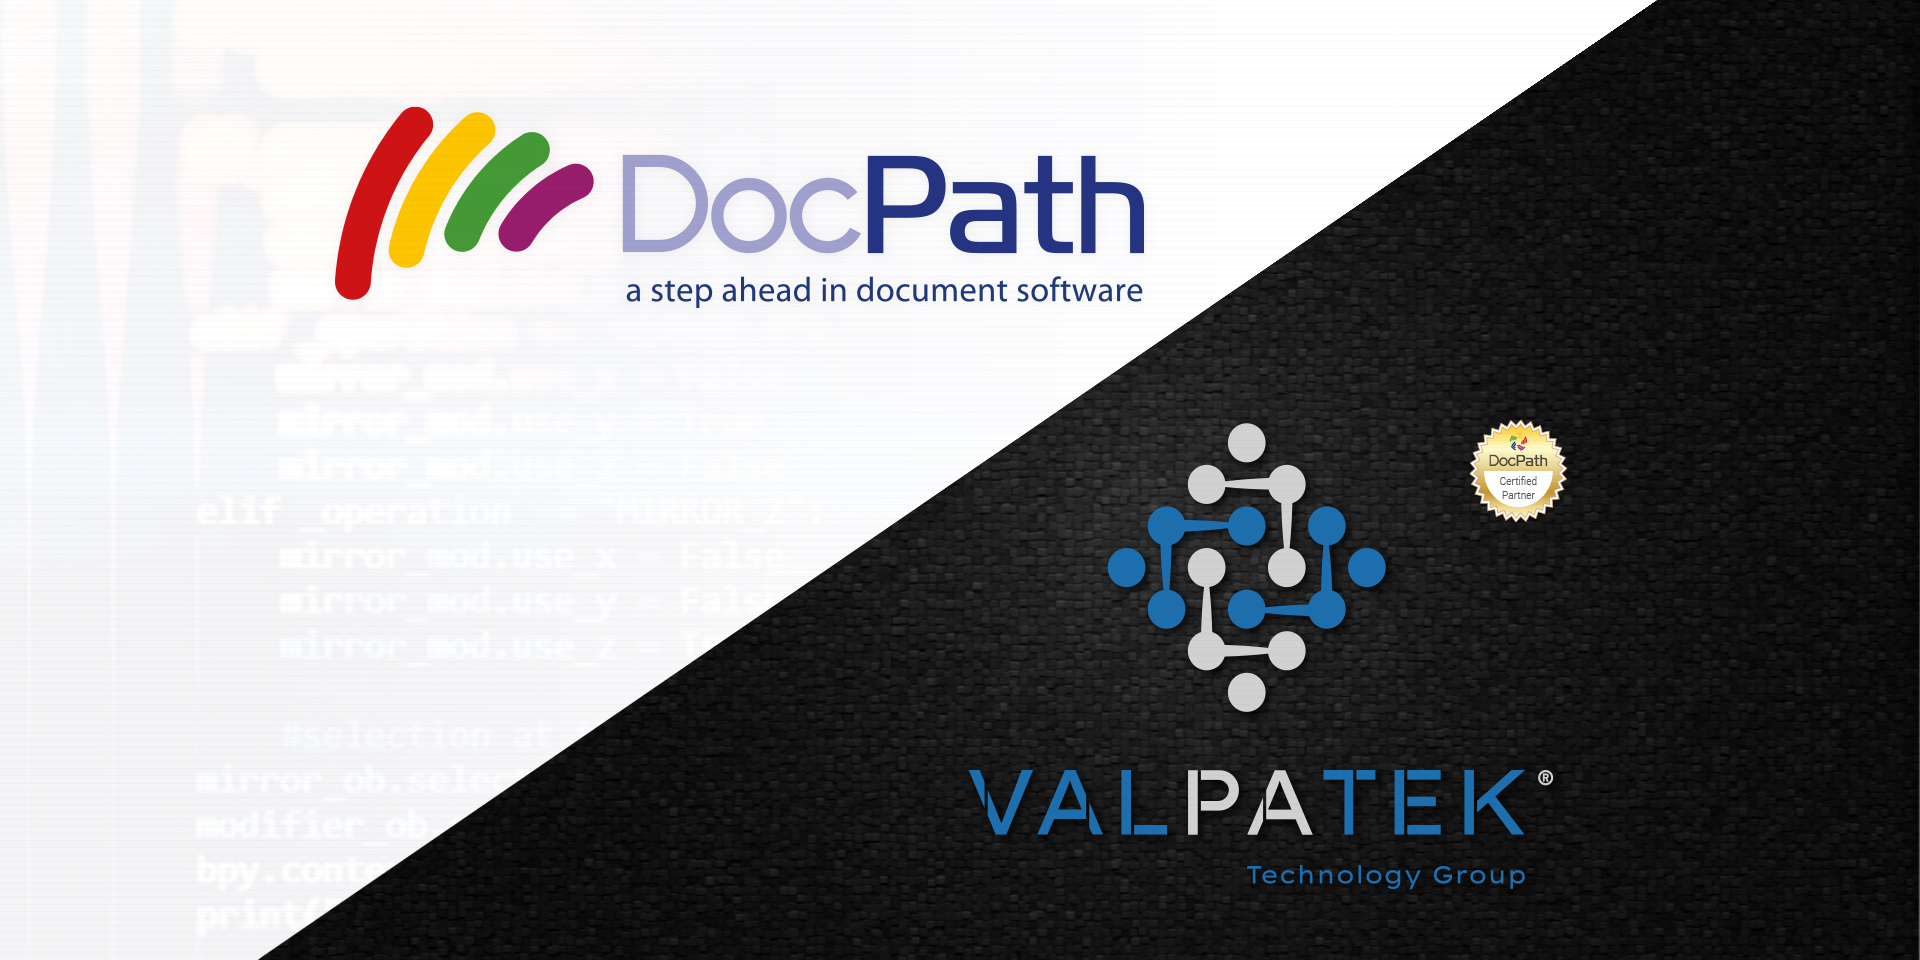 Valpatek Technology Group implementará la tecnología de documentos de DocPath. Esta nueva asociación refuerza la ventaja competitiva del software documental de DocPath